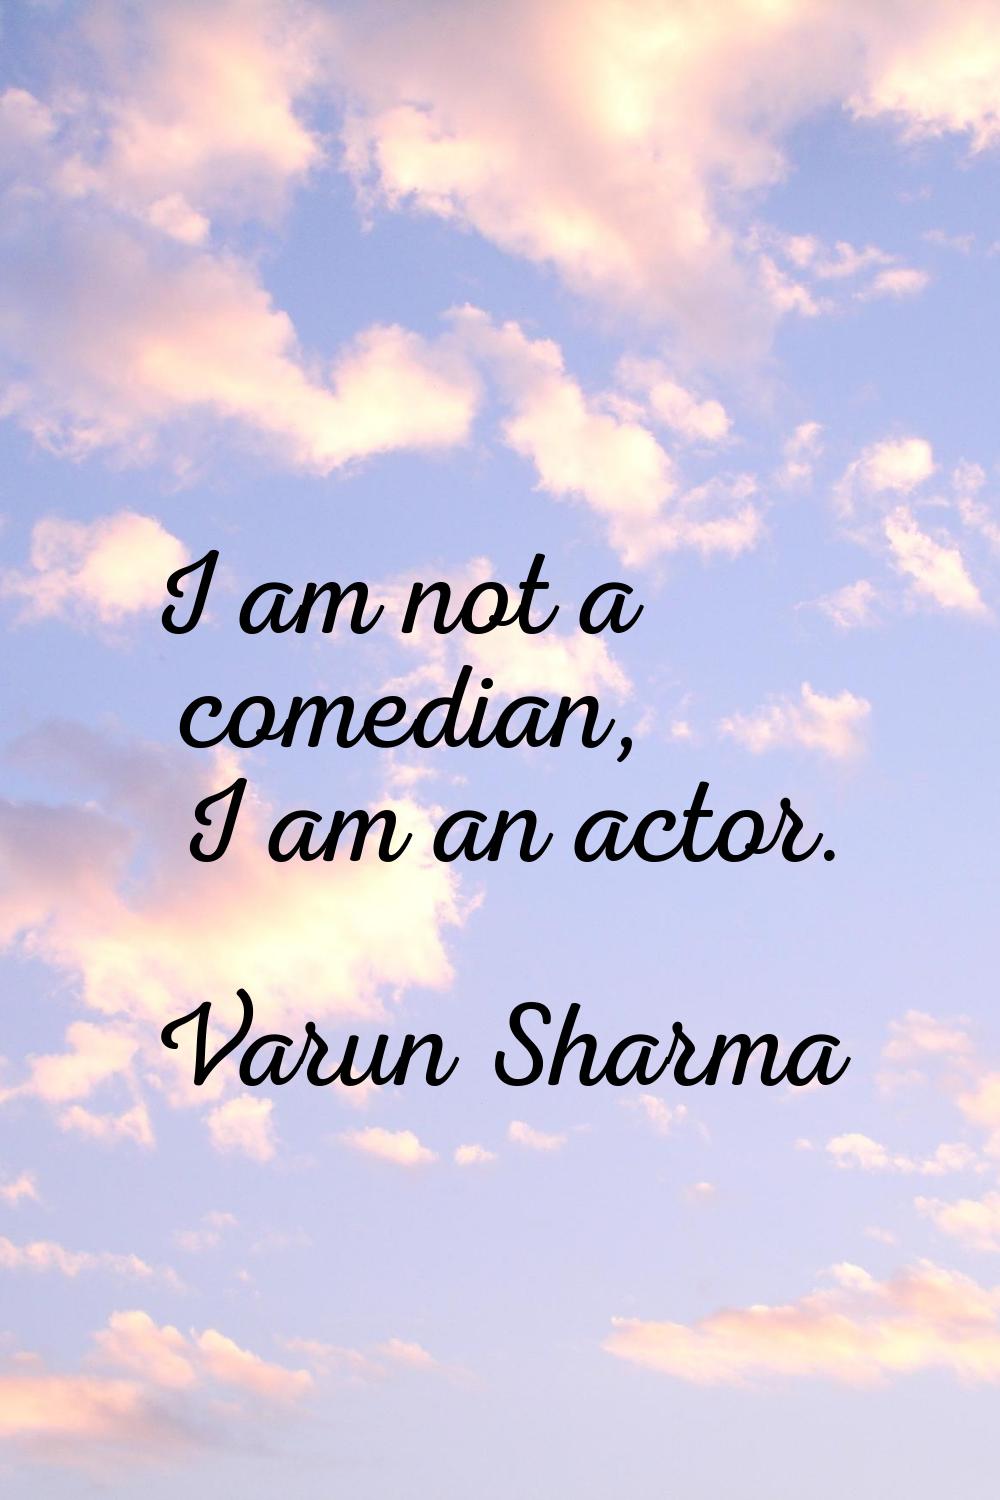 I am not a comedian, I am an actor.